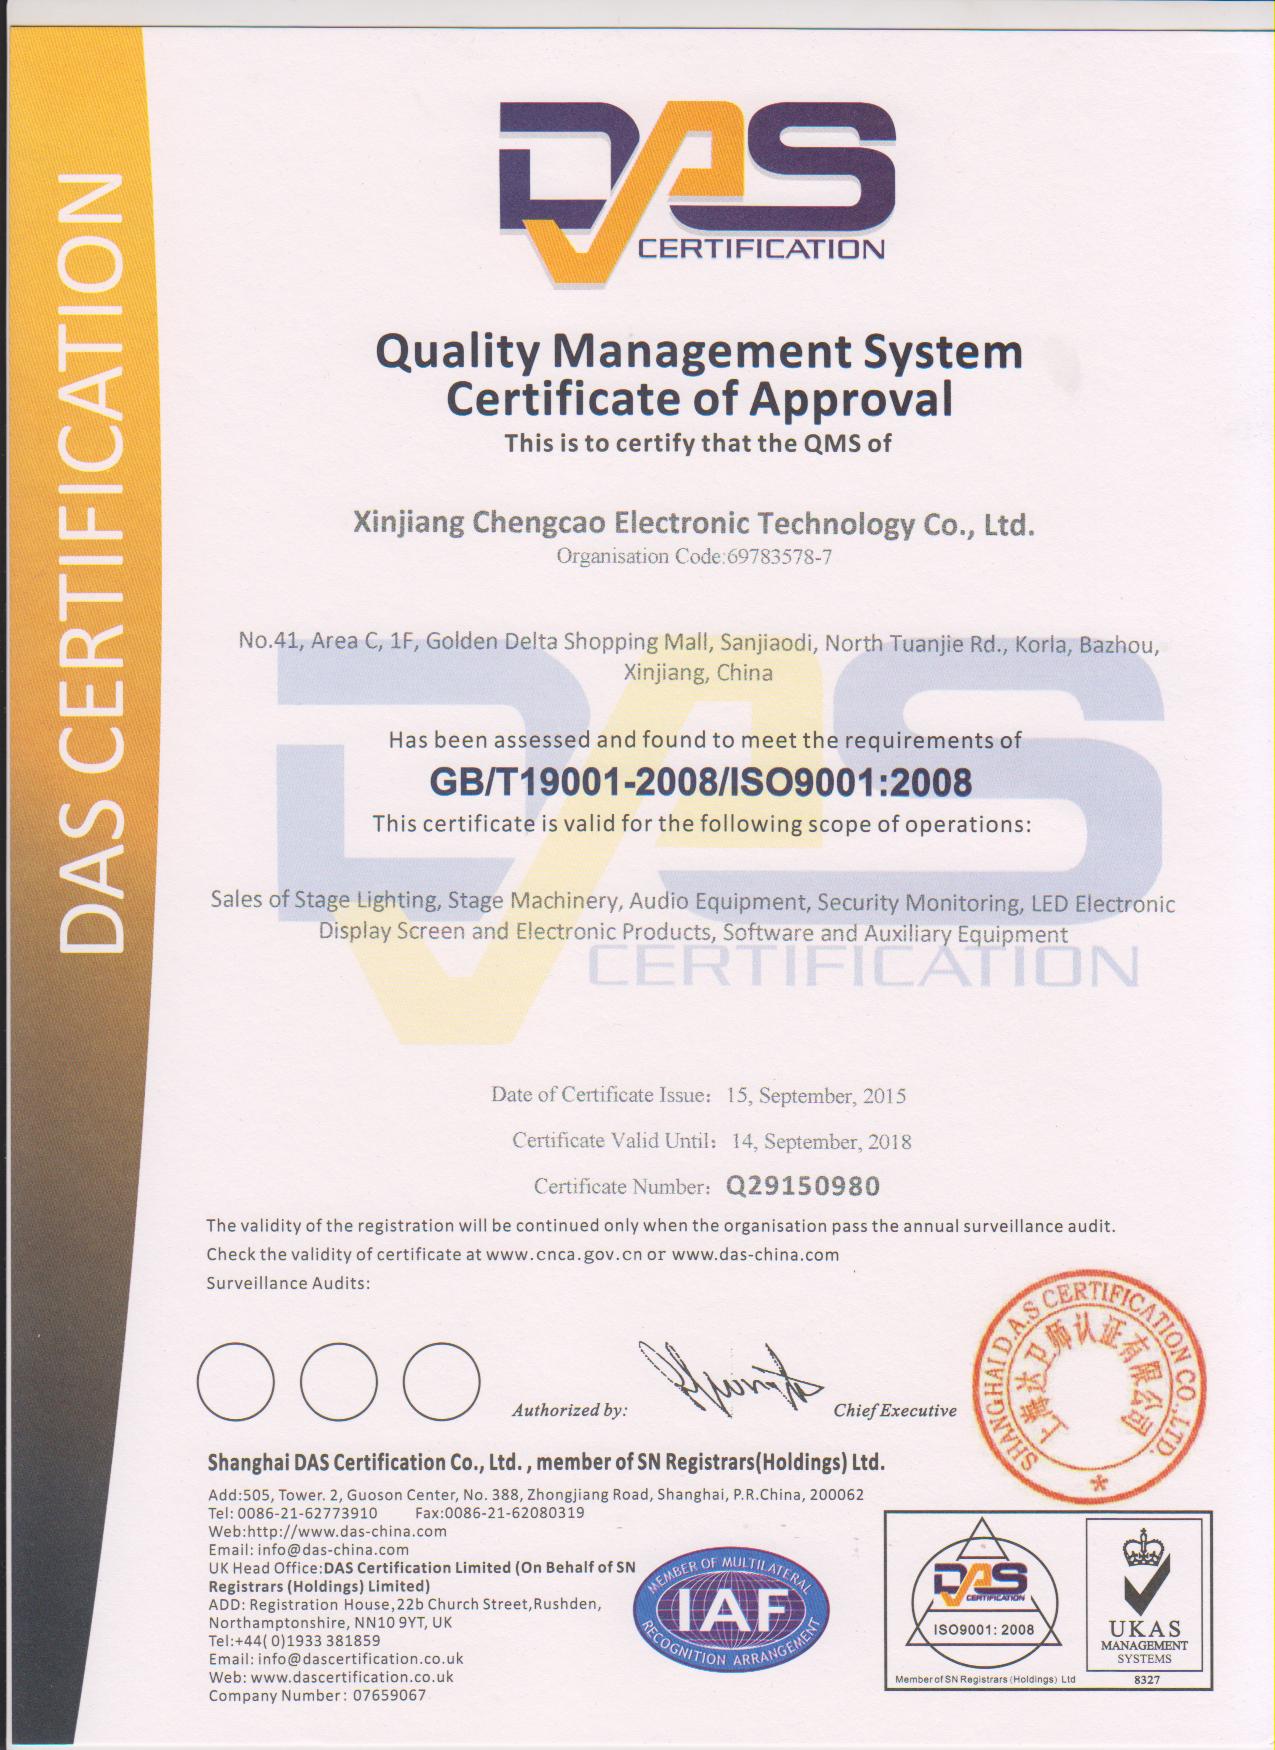 恭喜我公司獲得質量管理體系認證證書